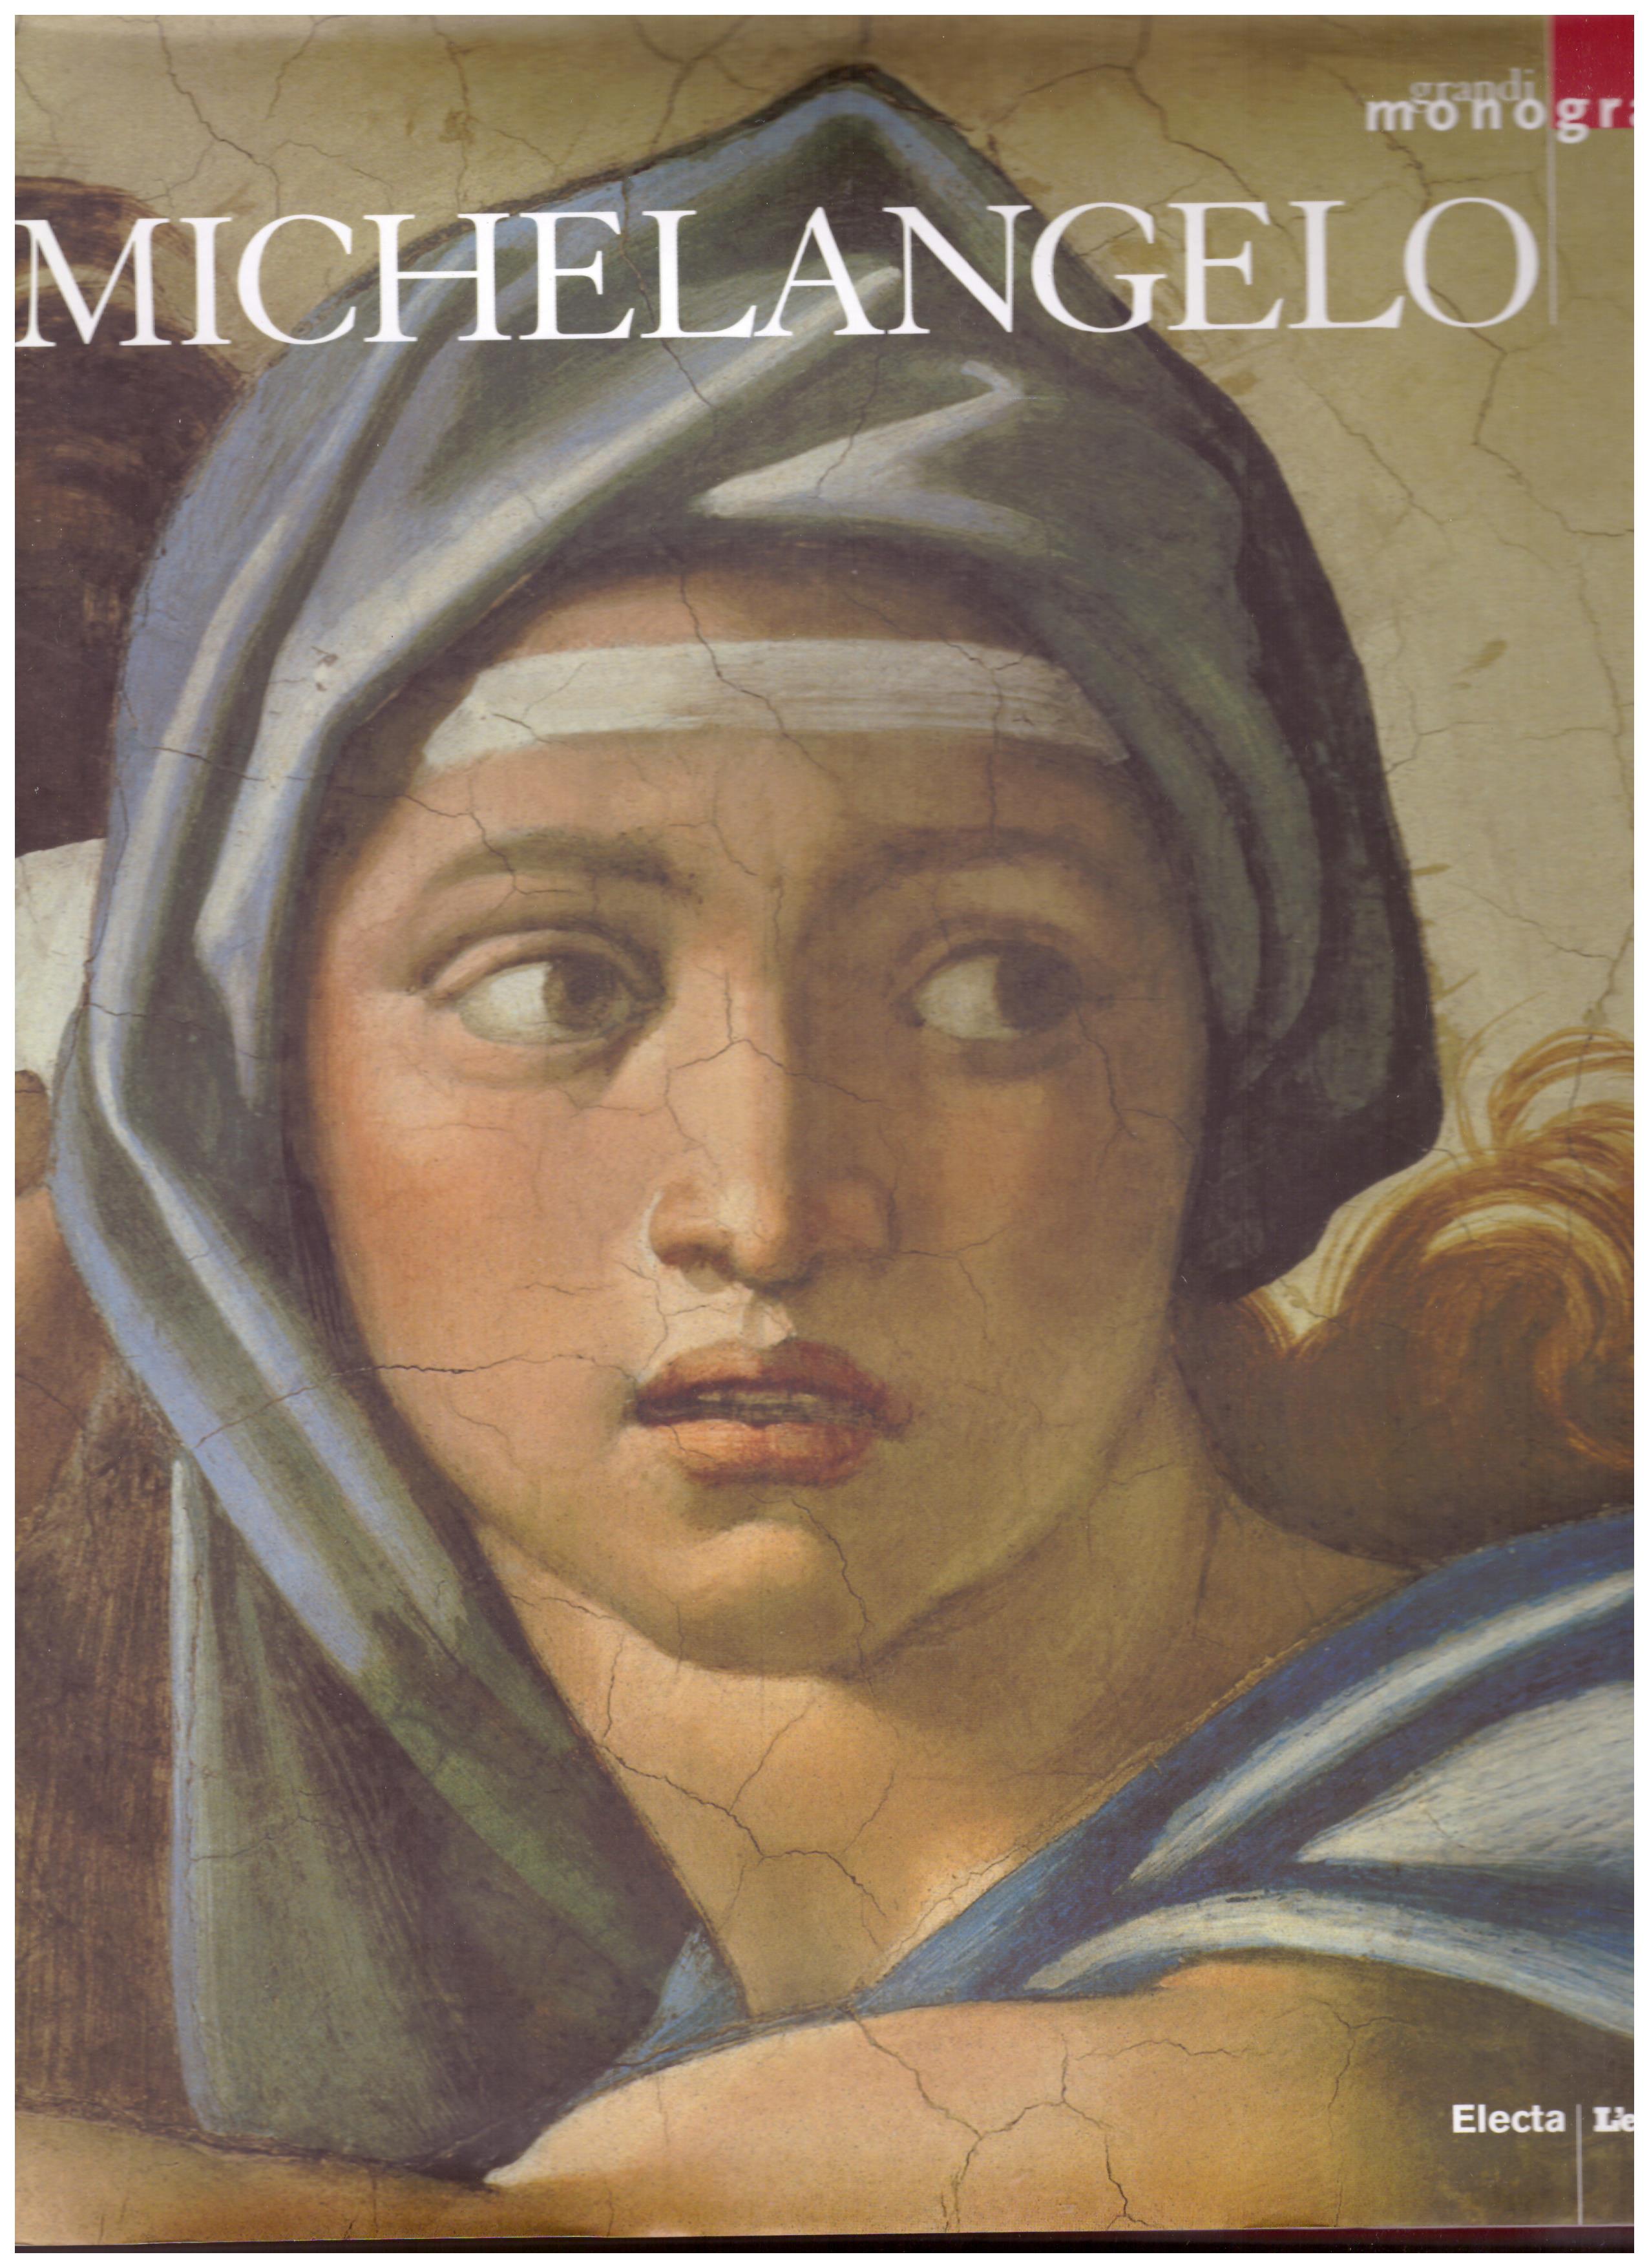 Titolo: Grandi monografie, Michelangelo    Autore: AA.VV.      Editore: Electa,L'Espresso